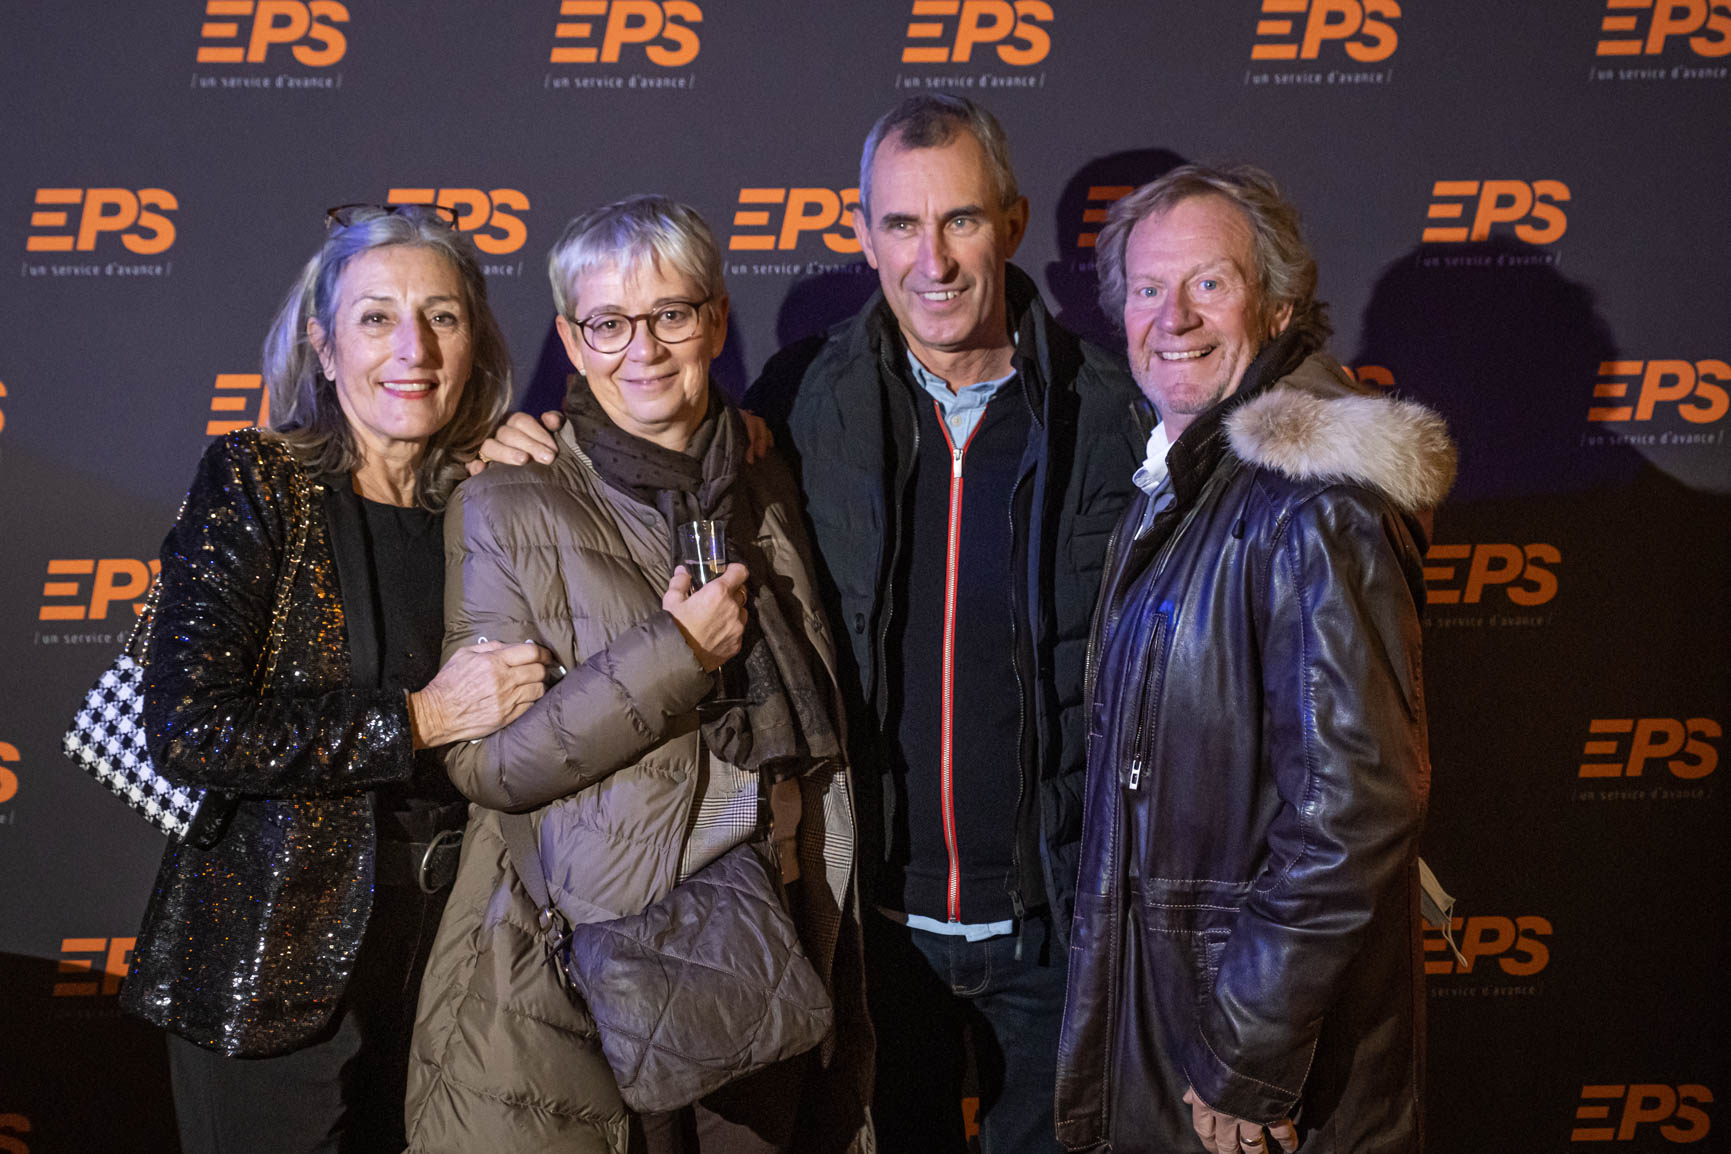 GROUPE EPS - Anniversaire Entreprise 40 ans | by Bonne Nouvelle, Agence Communication & évènementiel, Valence (Drôme)